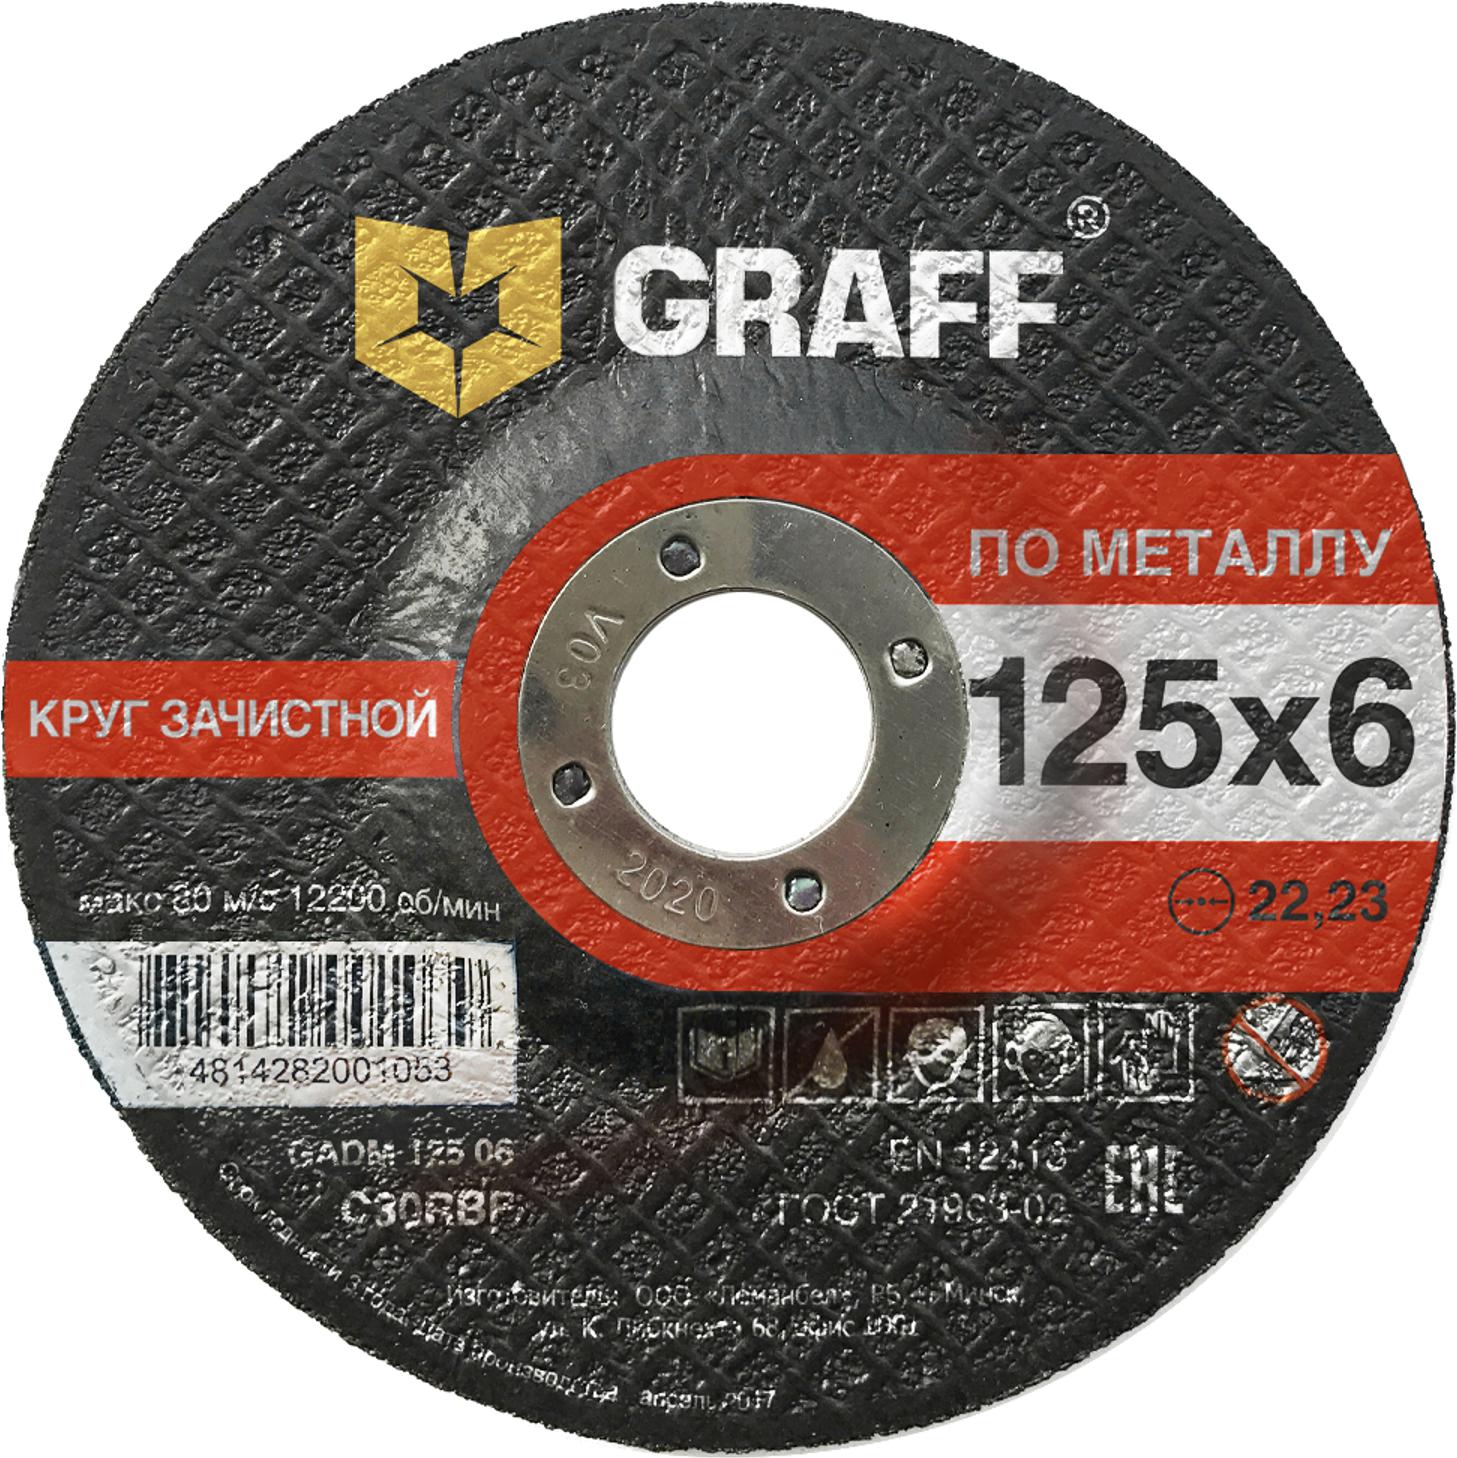 Круг зачистной GRAFF GADM 125 06 круг зачистной пурпурный roxpro clean